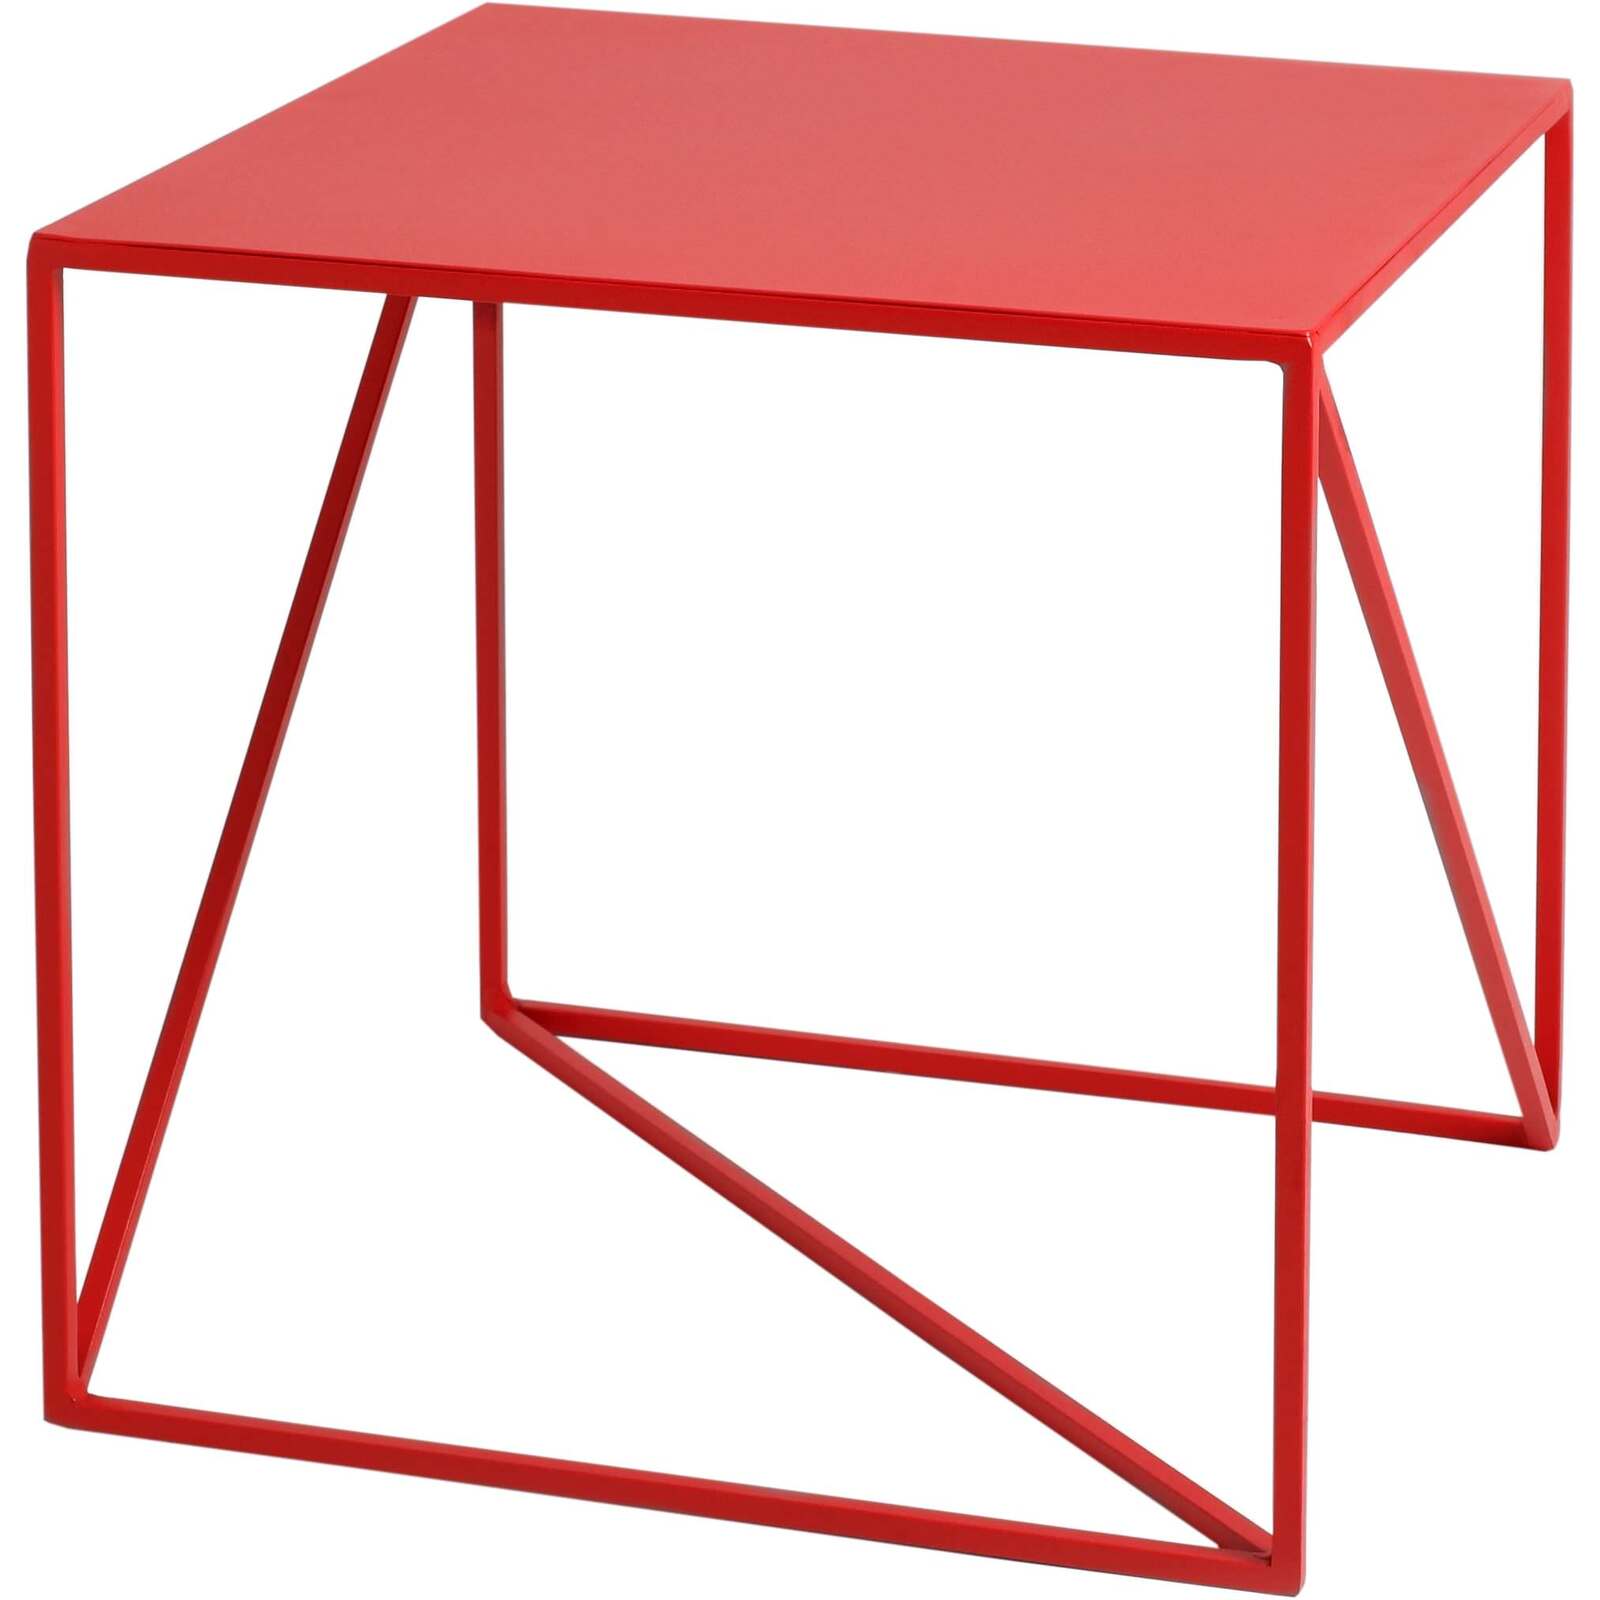 Table d’appoint carré en métal rouge